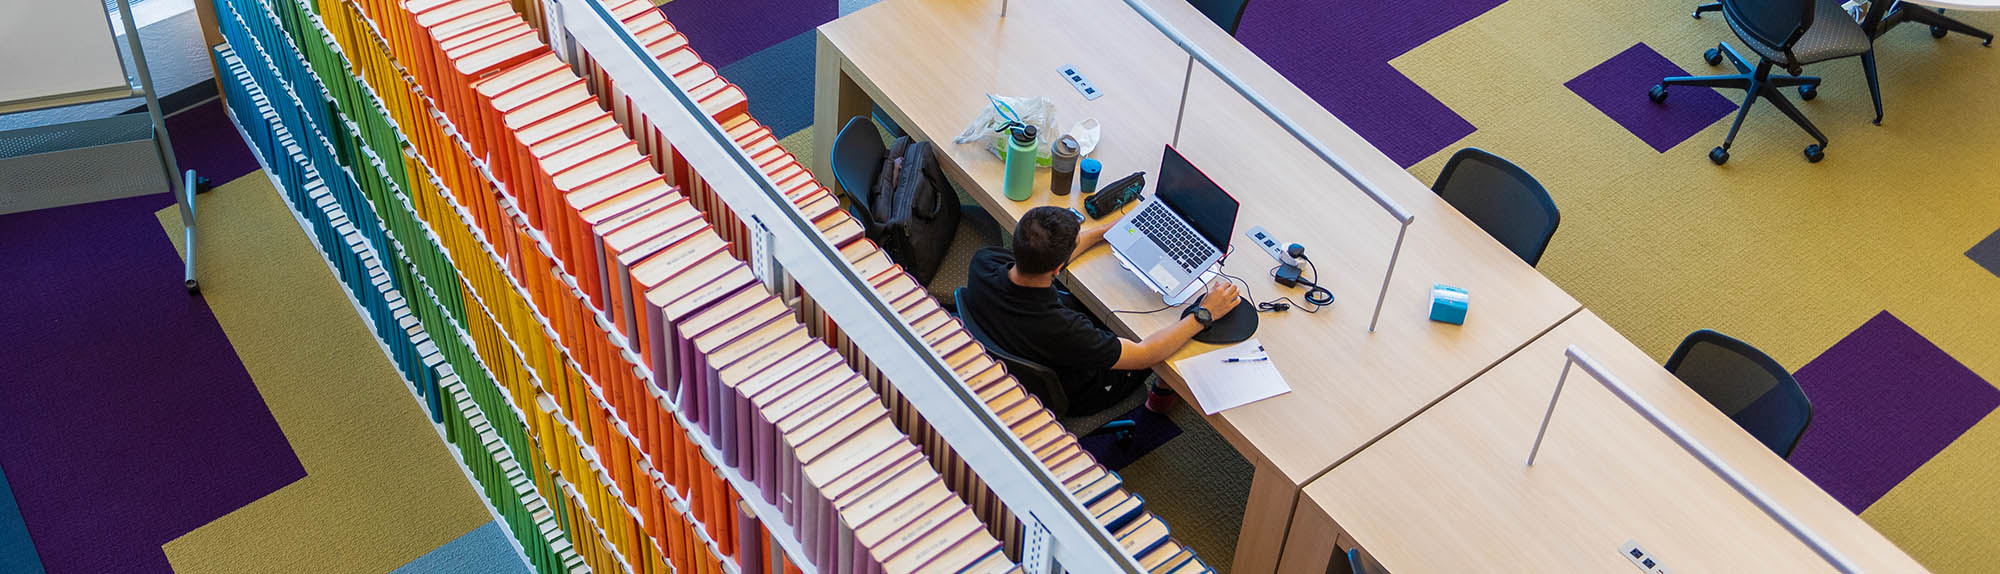 Eine Vogelperspektive einer Person, die in der HSC-Bibliothek studiert, mit einer bunten Reihe von Büchern hinter sich